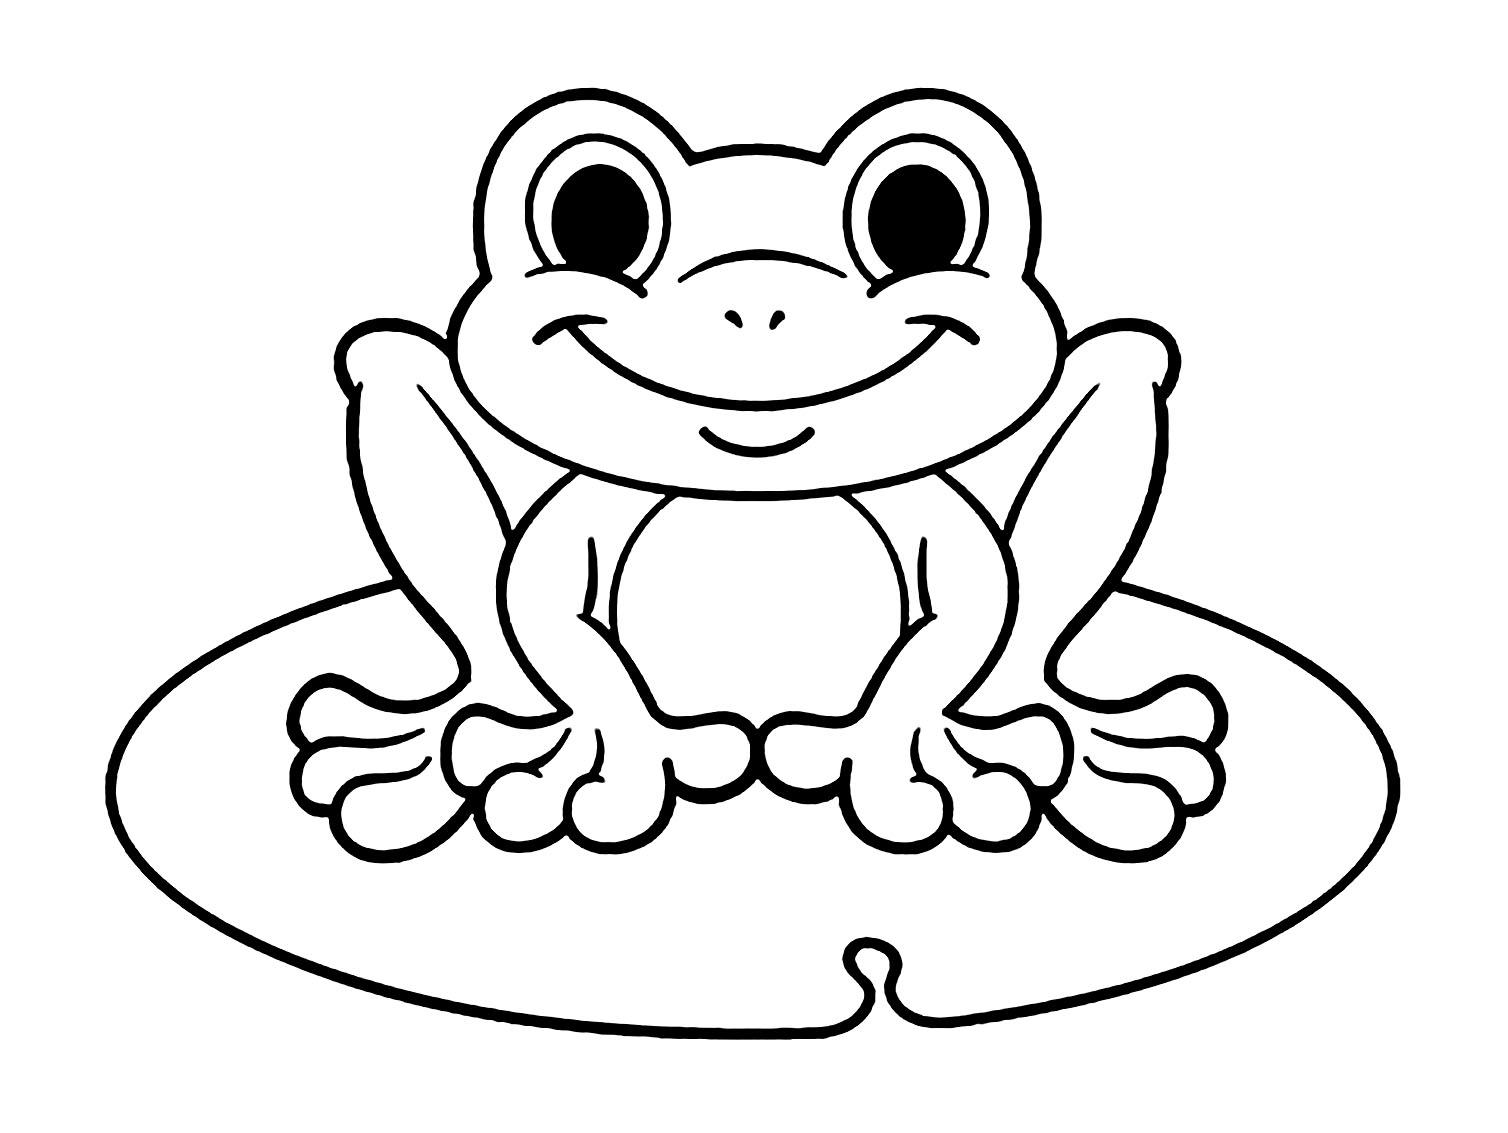 neprieh-adn-ko-a-invalidita-frog-coloring-book-rada-opakovanie-kond-m